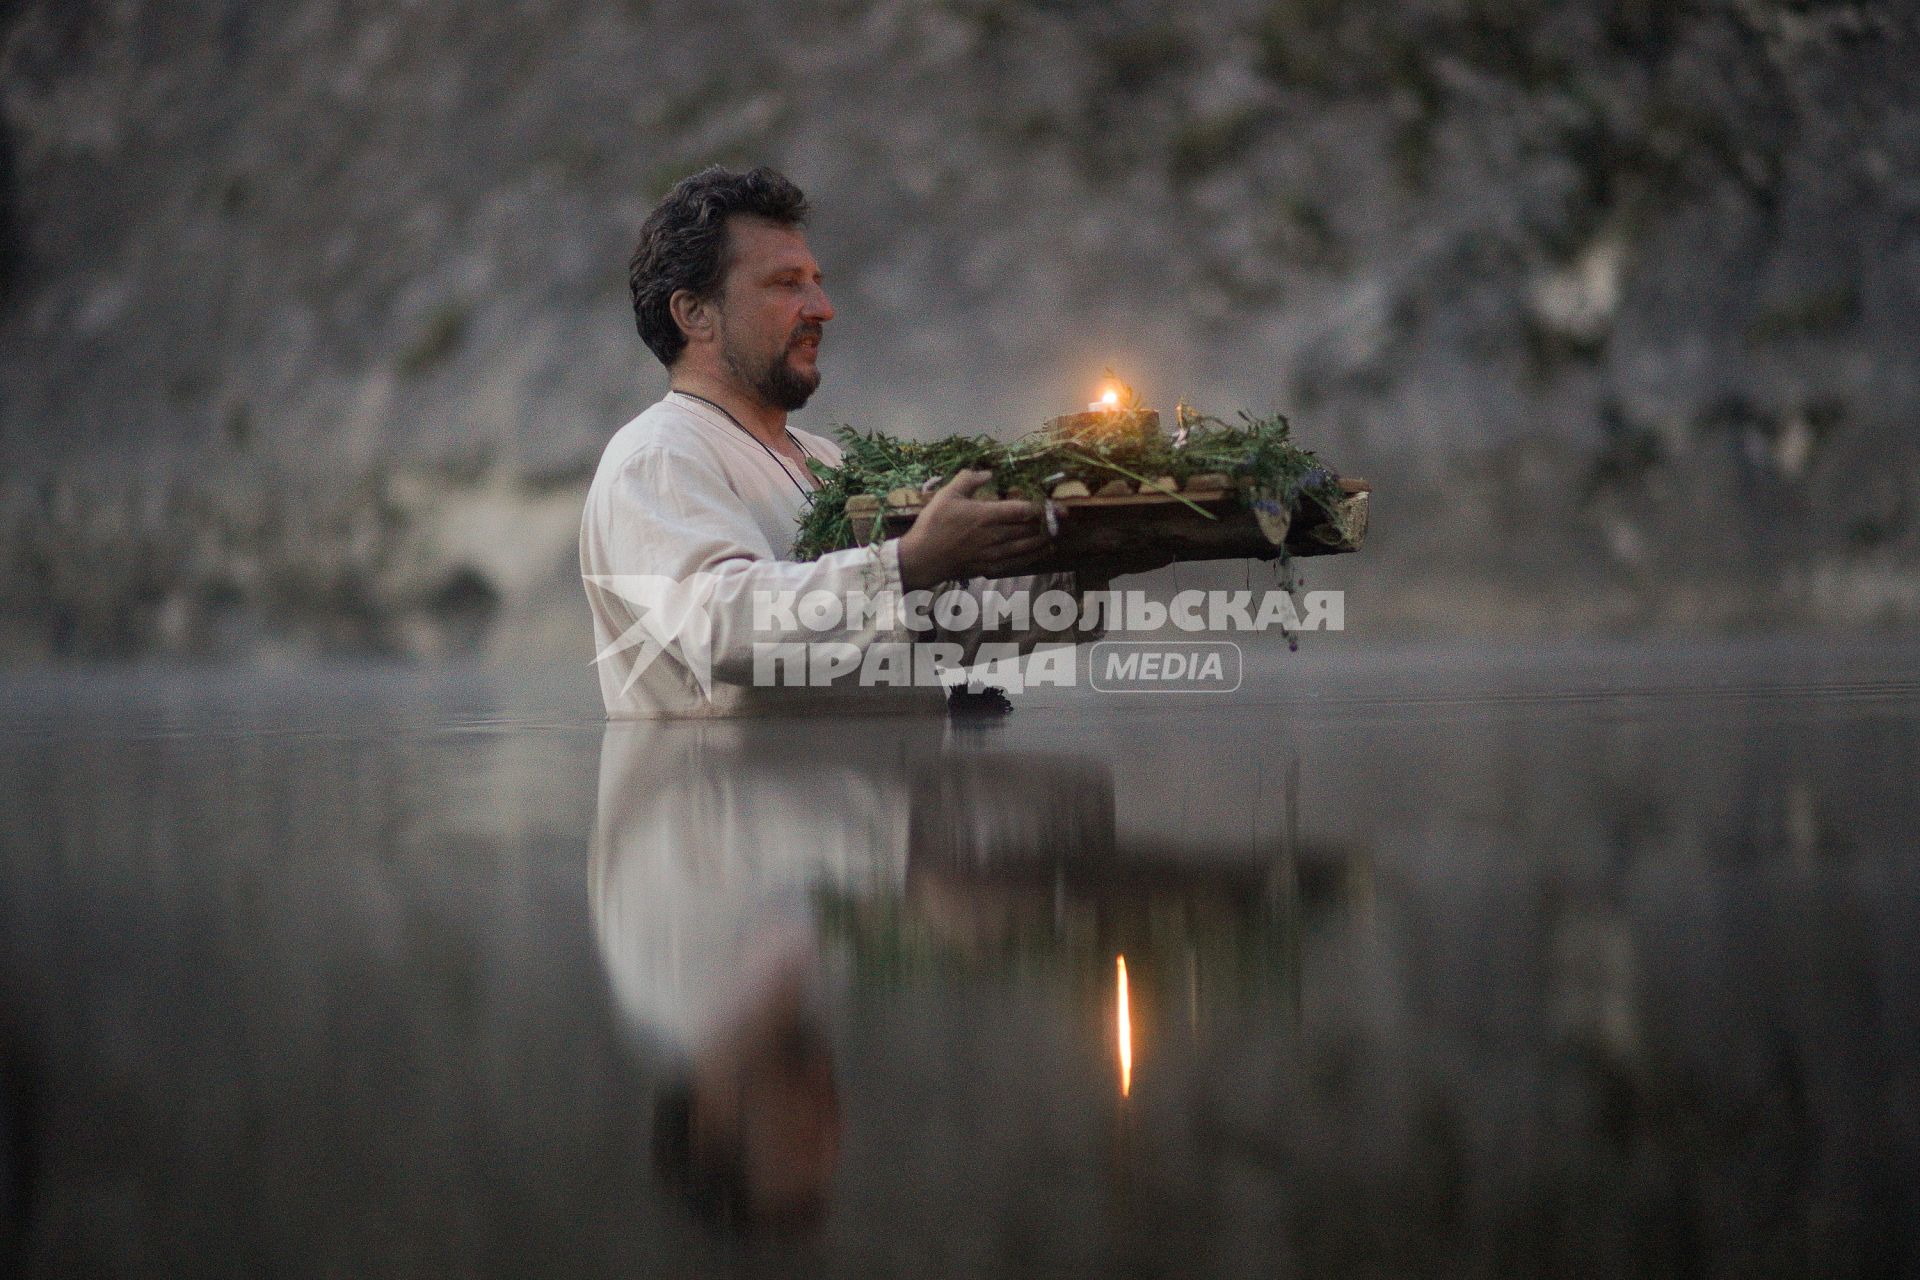 Участник празднования дня Ивана Купала стоят с венками в руках, по грудь в воде